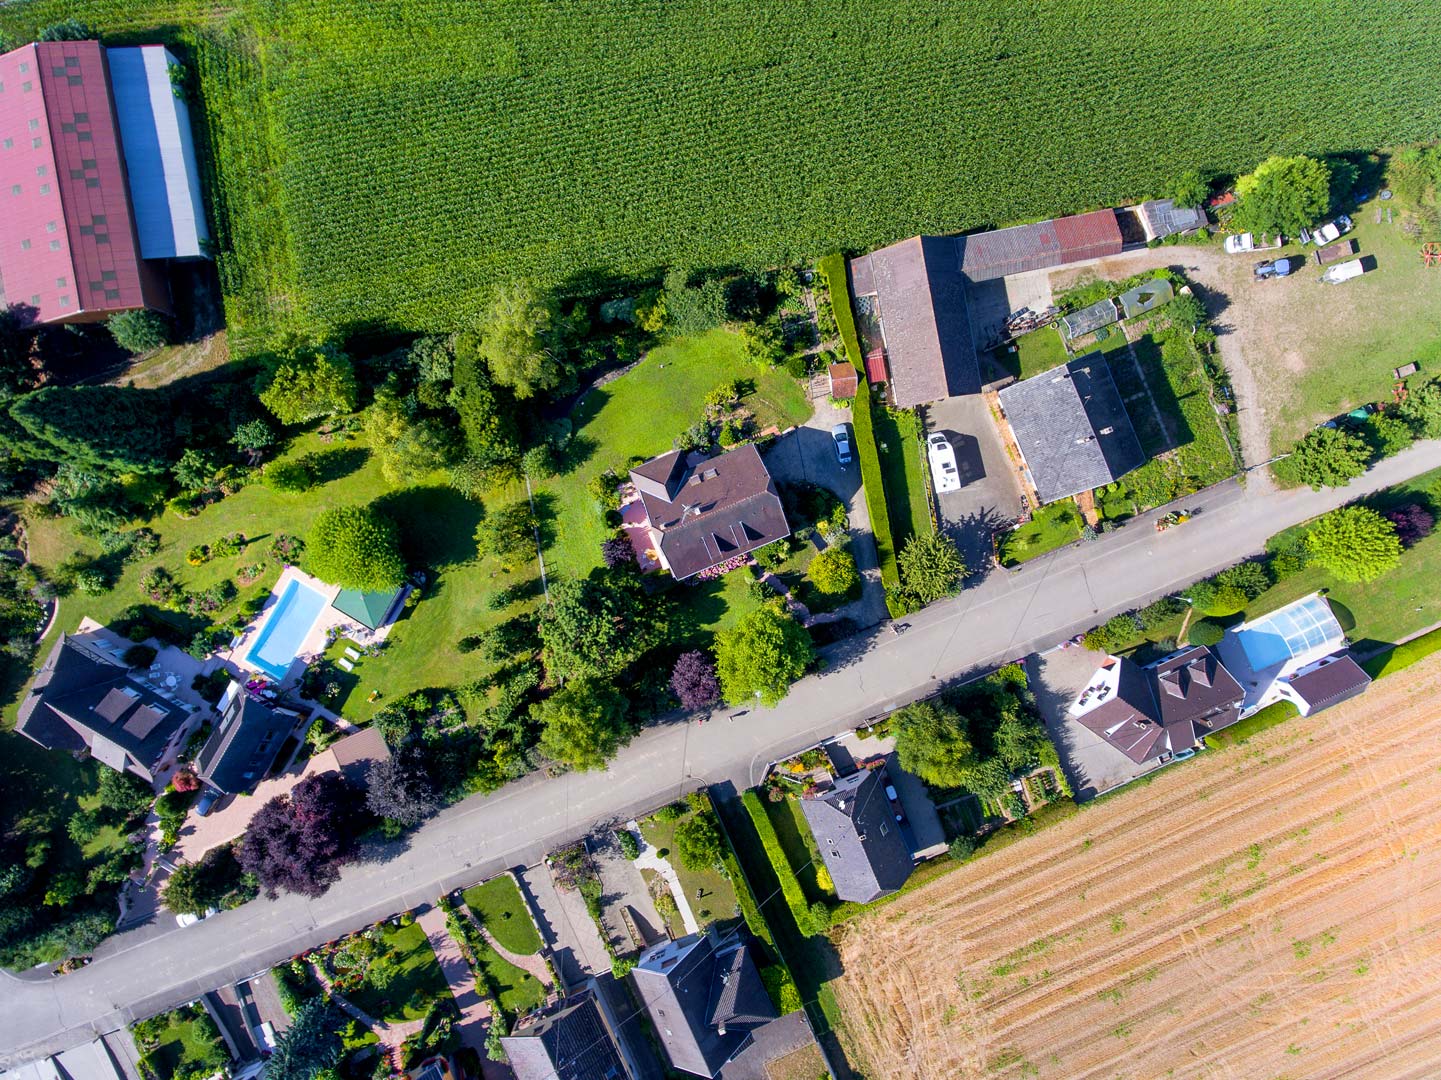 Phototographie par drone - Maison particulière Bas-Rhin - Prise de vue pour plan cadastre - 81